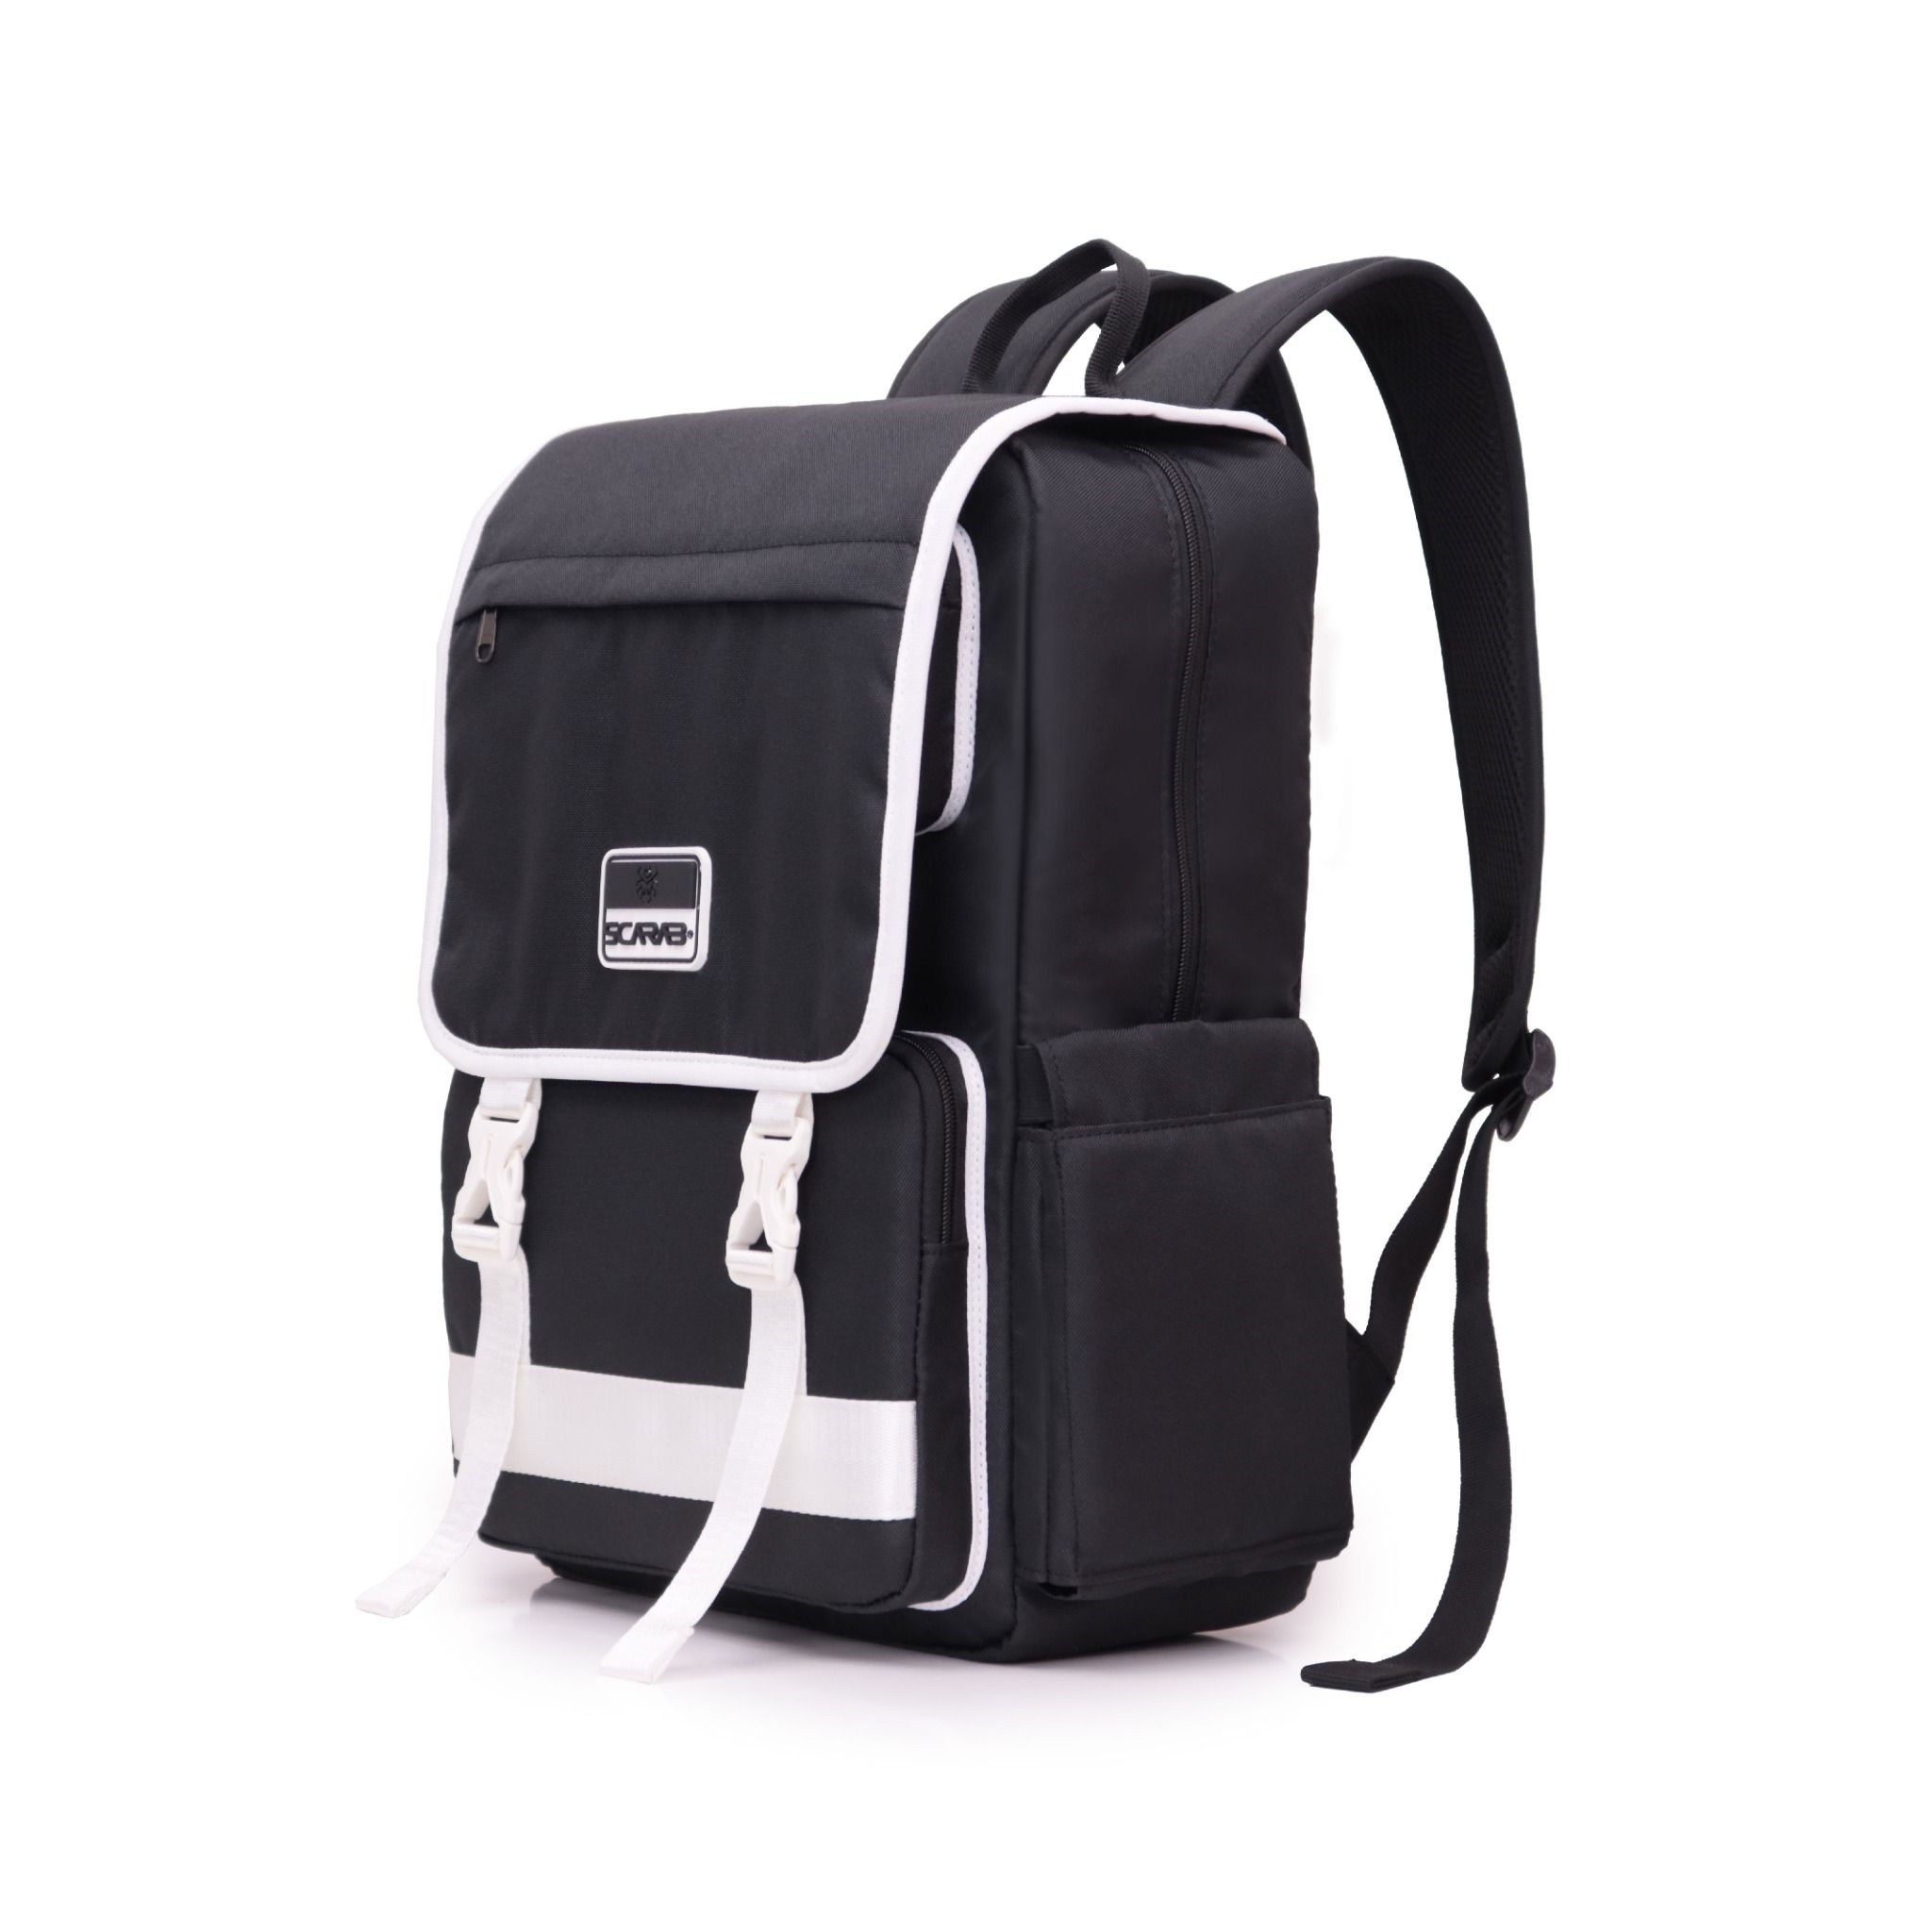  Tetris Backpack - Black White 